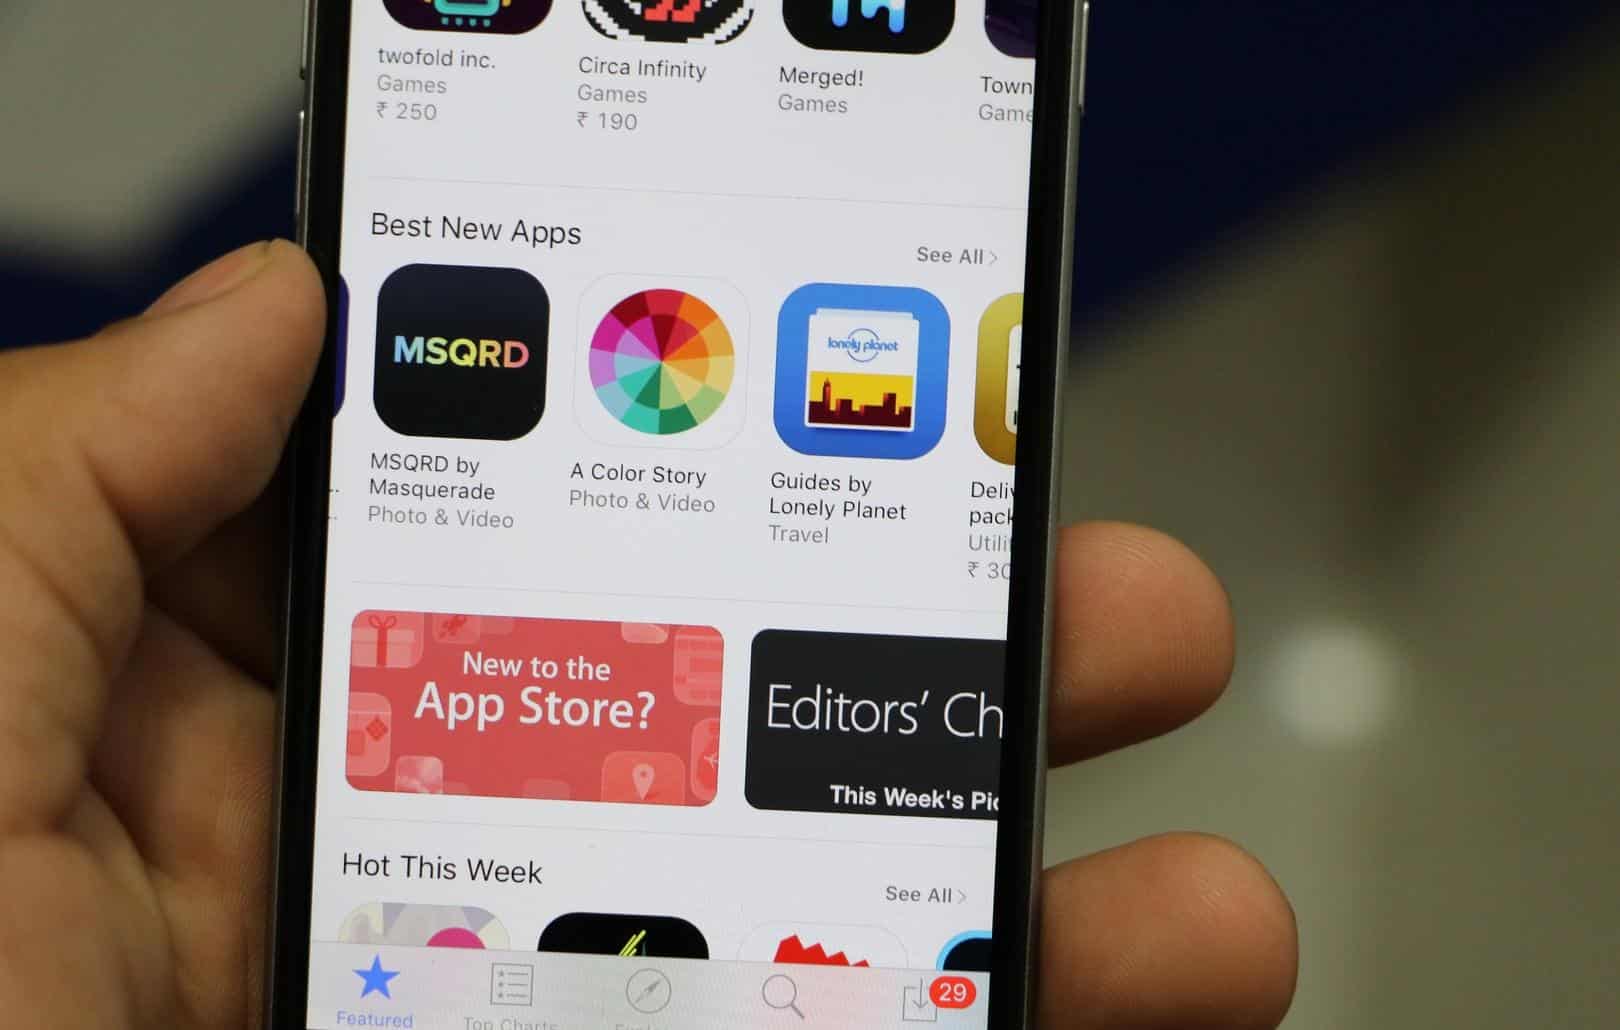 App Store repete atualizações para consertar falha de inicialização em apps  - Olhar Digital